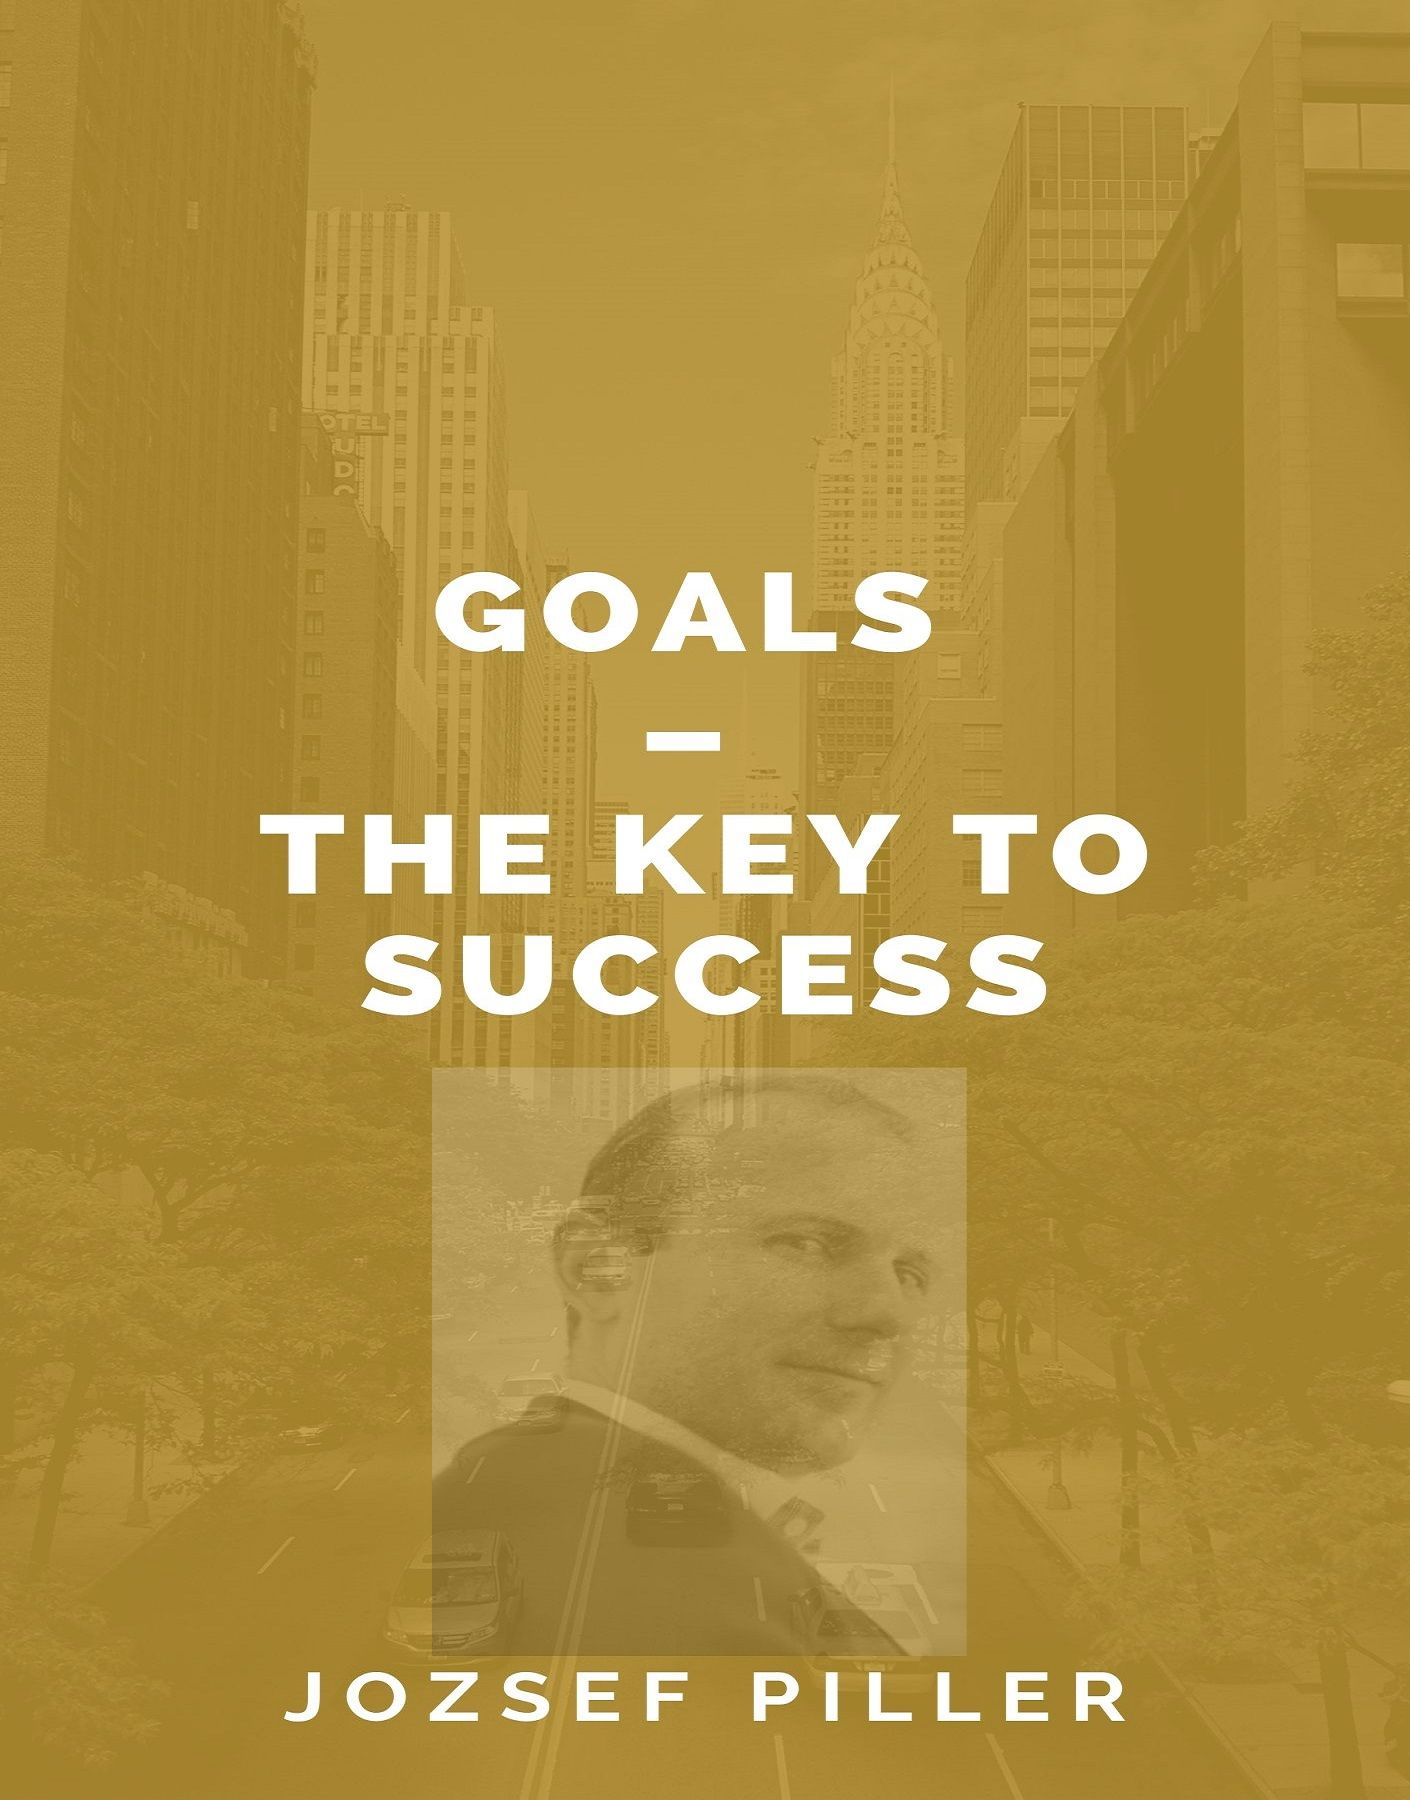 Goals – The Key to Success, ljudbok av Jozsef Piller